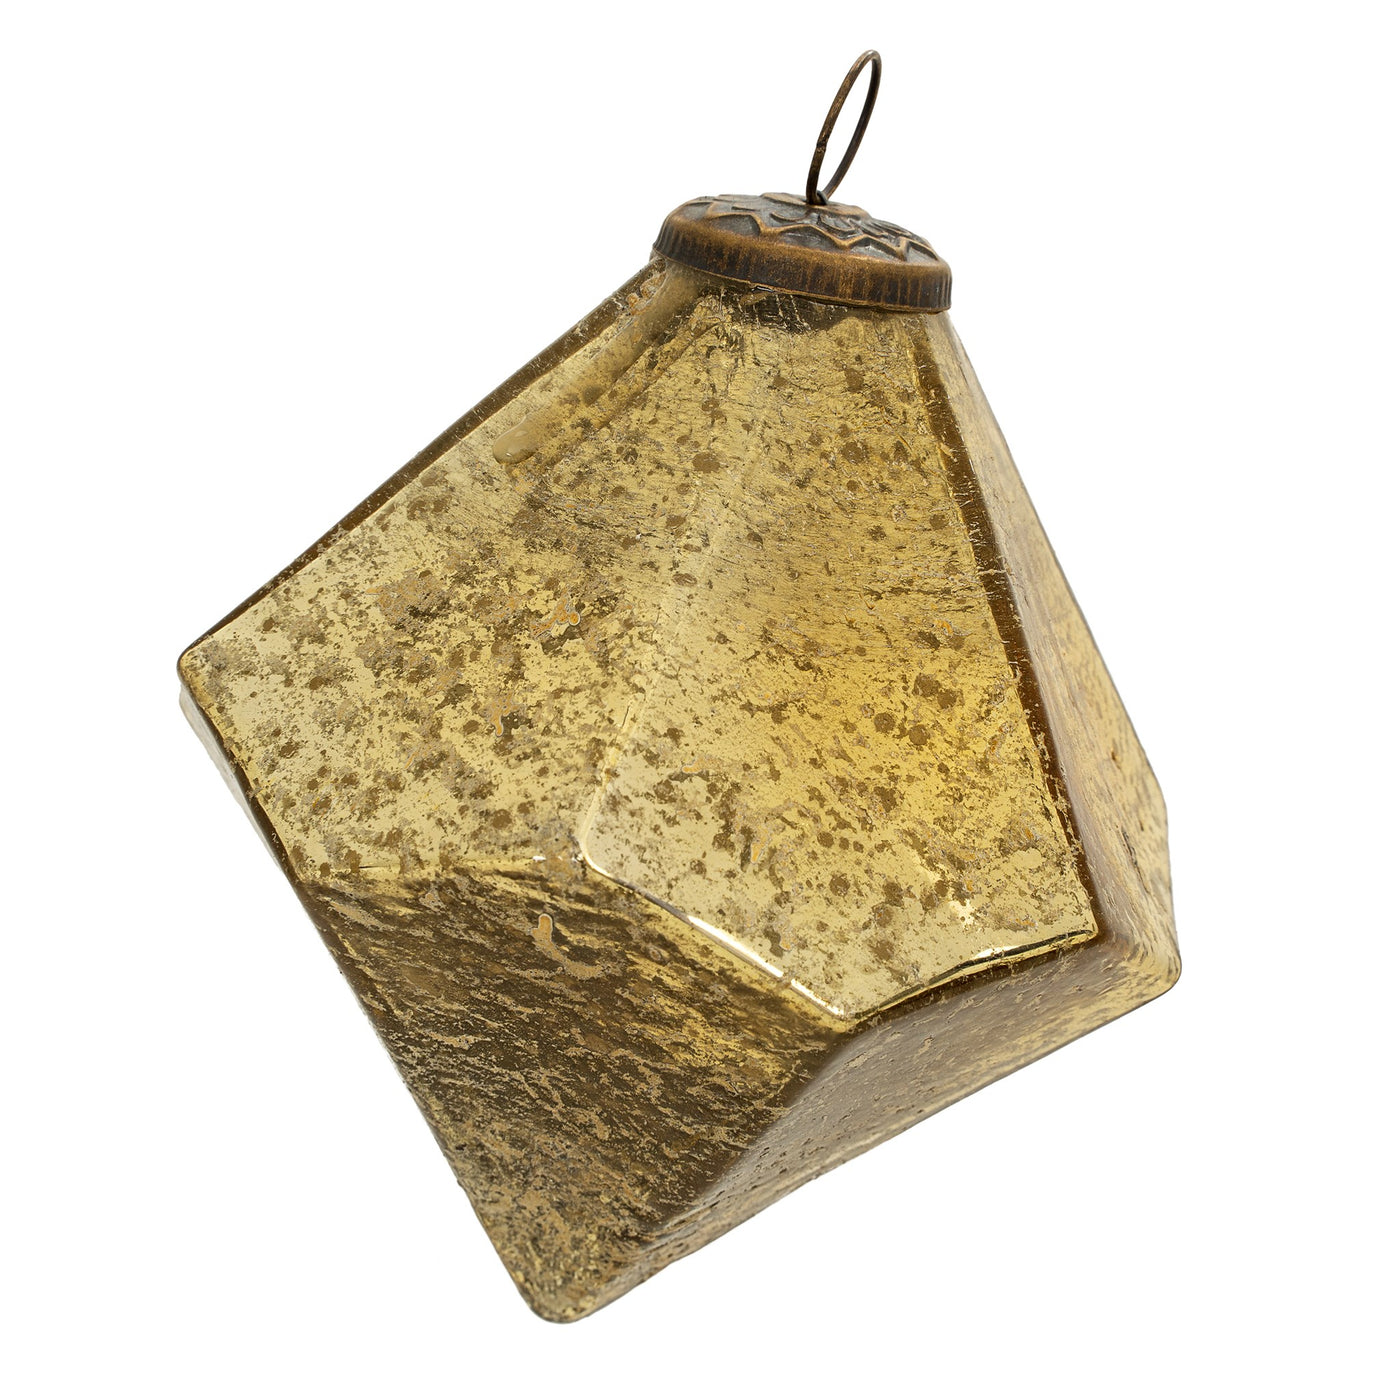 Diamond Drop Ornament - Antiqued Gold color, diamond shape